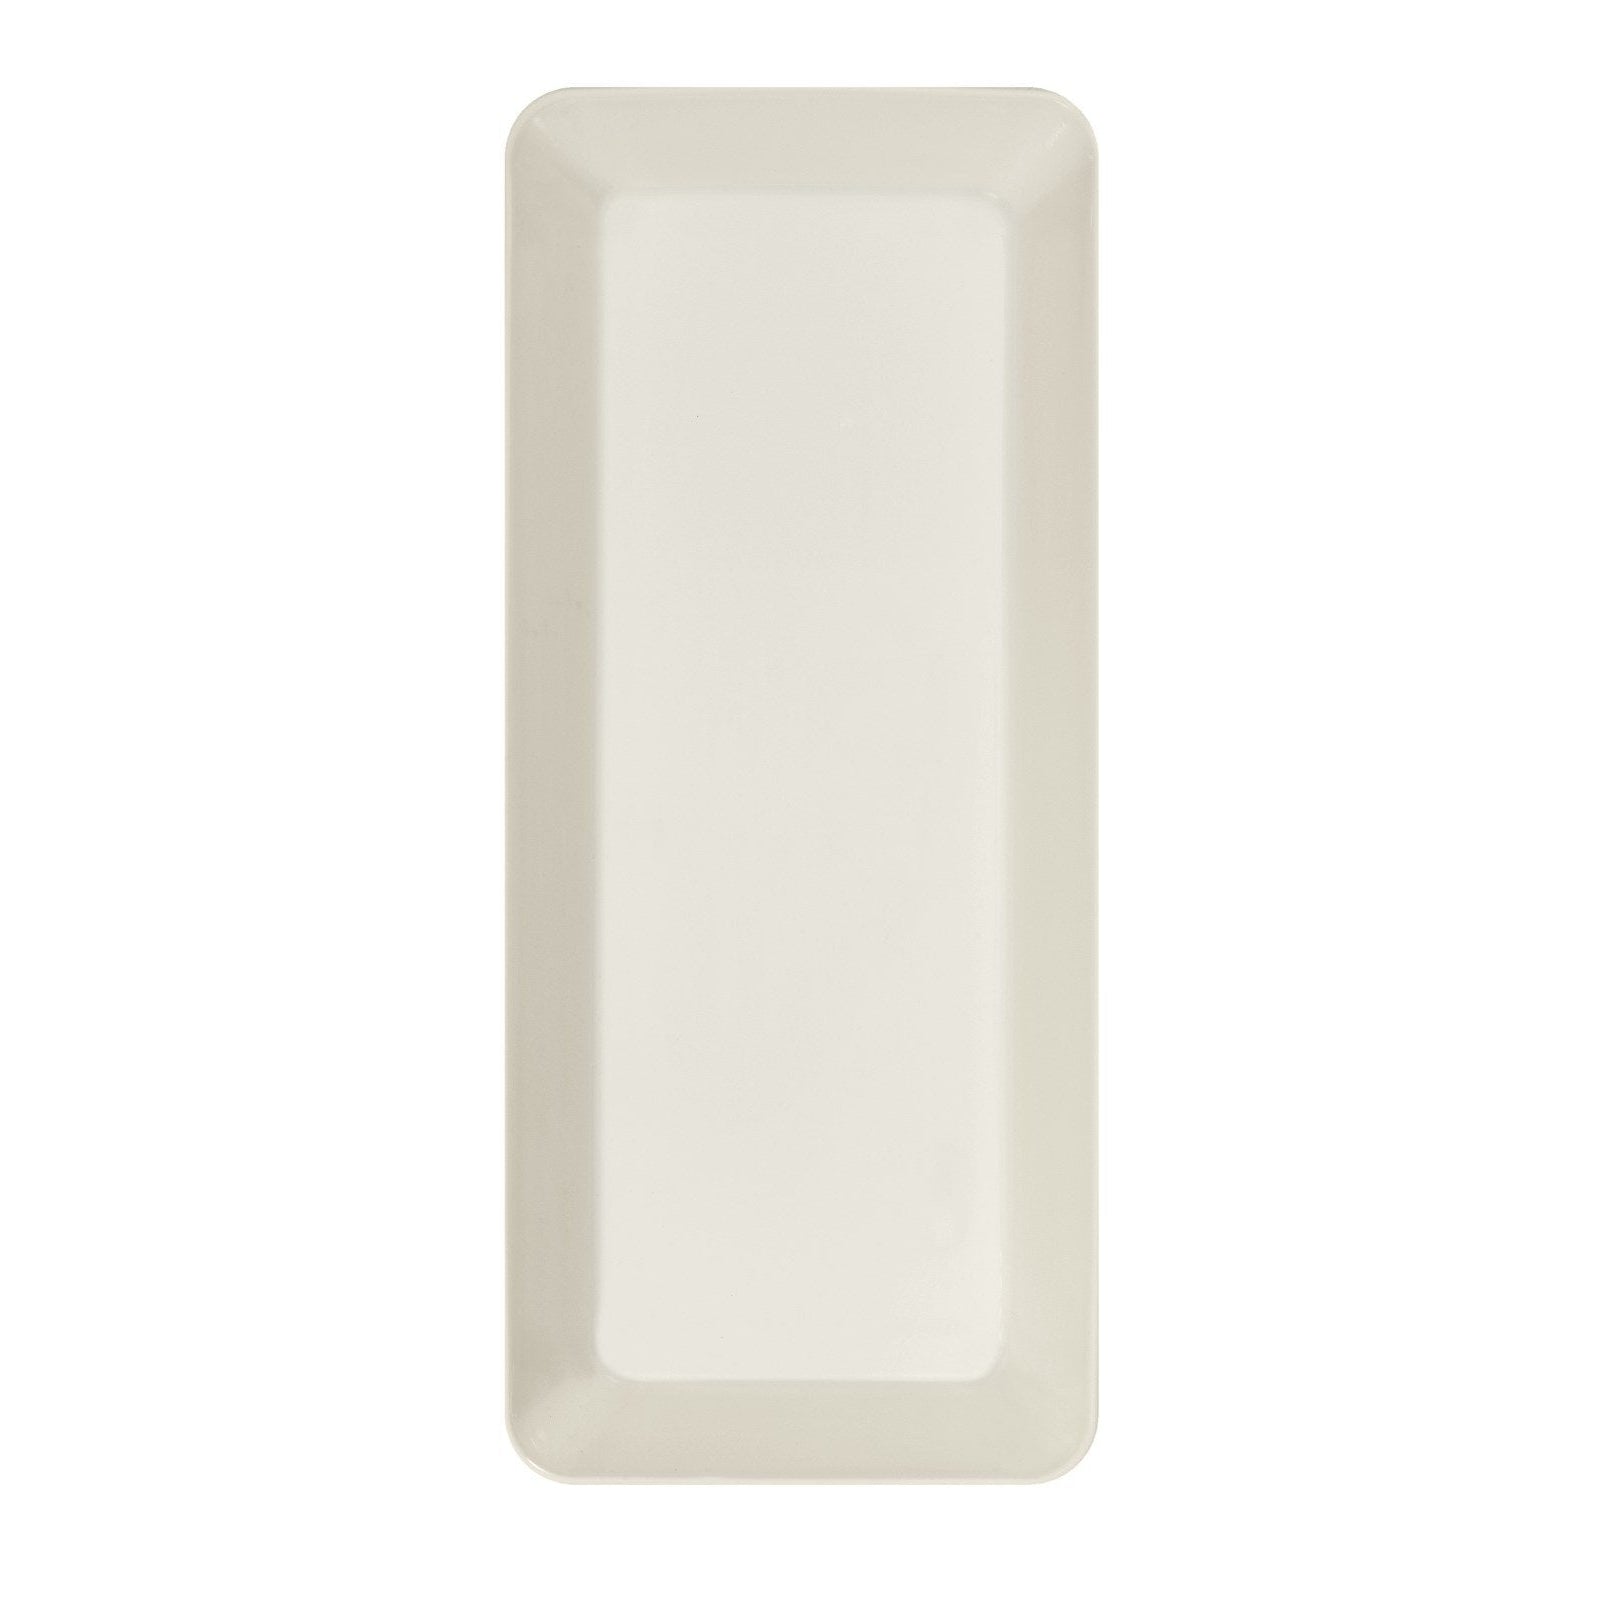 Iittala TEEMA Bowl blanc, 16x37 cm